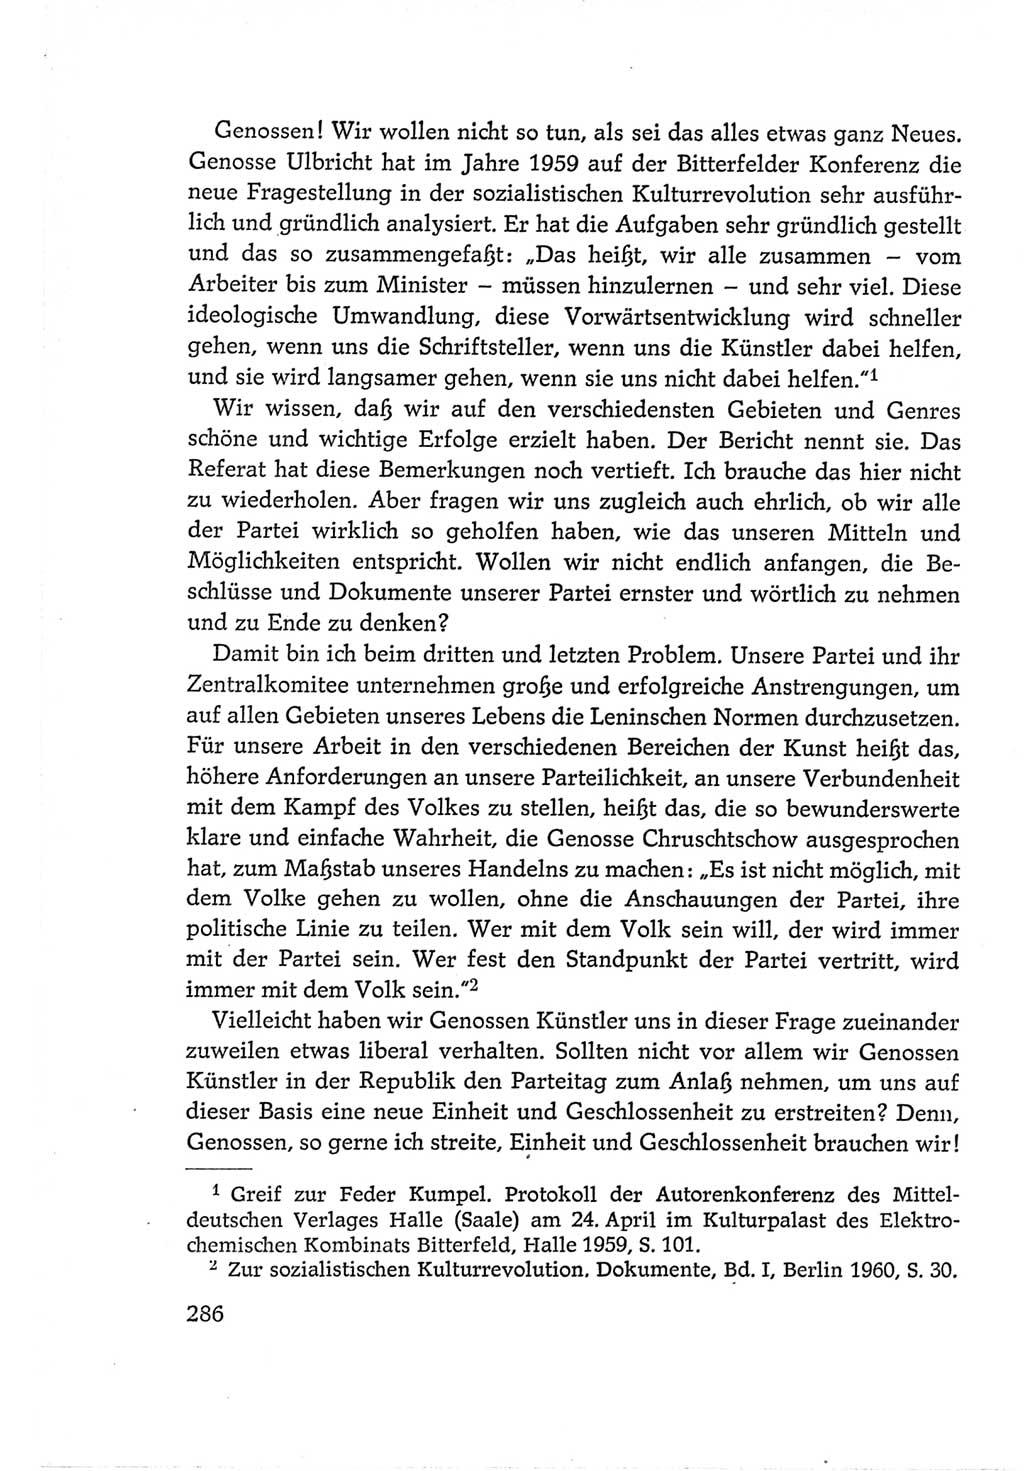 Protokoll der Verhandlungen des Ⅵ. Parteitages der Sozialistischen Einheitspartei Deutschlands (SED) [Deutsche Demokratische Republik (DDR)] 1963, Band Ⅰ, Seite 286 (Prot. Verh. Ⅵ. PT SED DDR 1963, Bd. Ⅰ, S. 286)